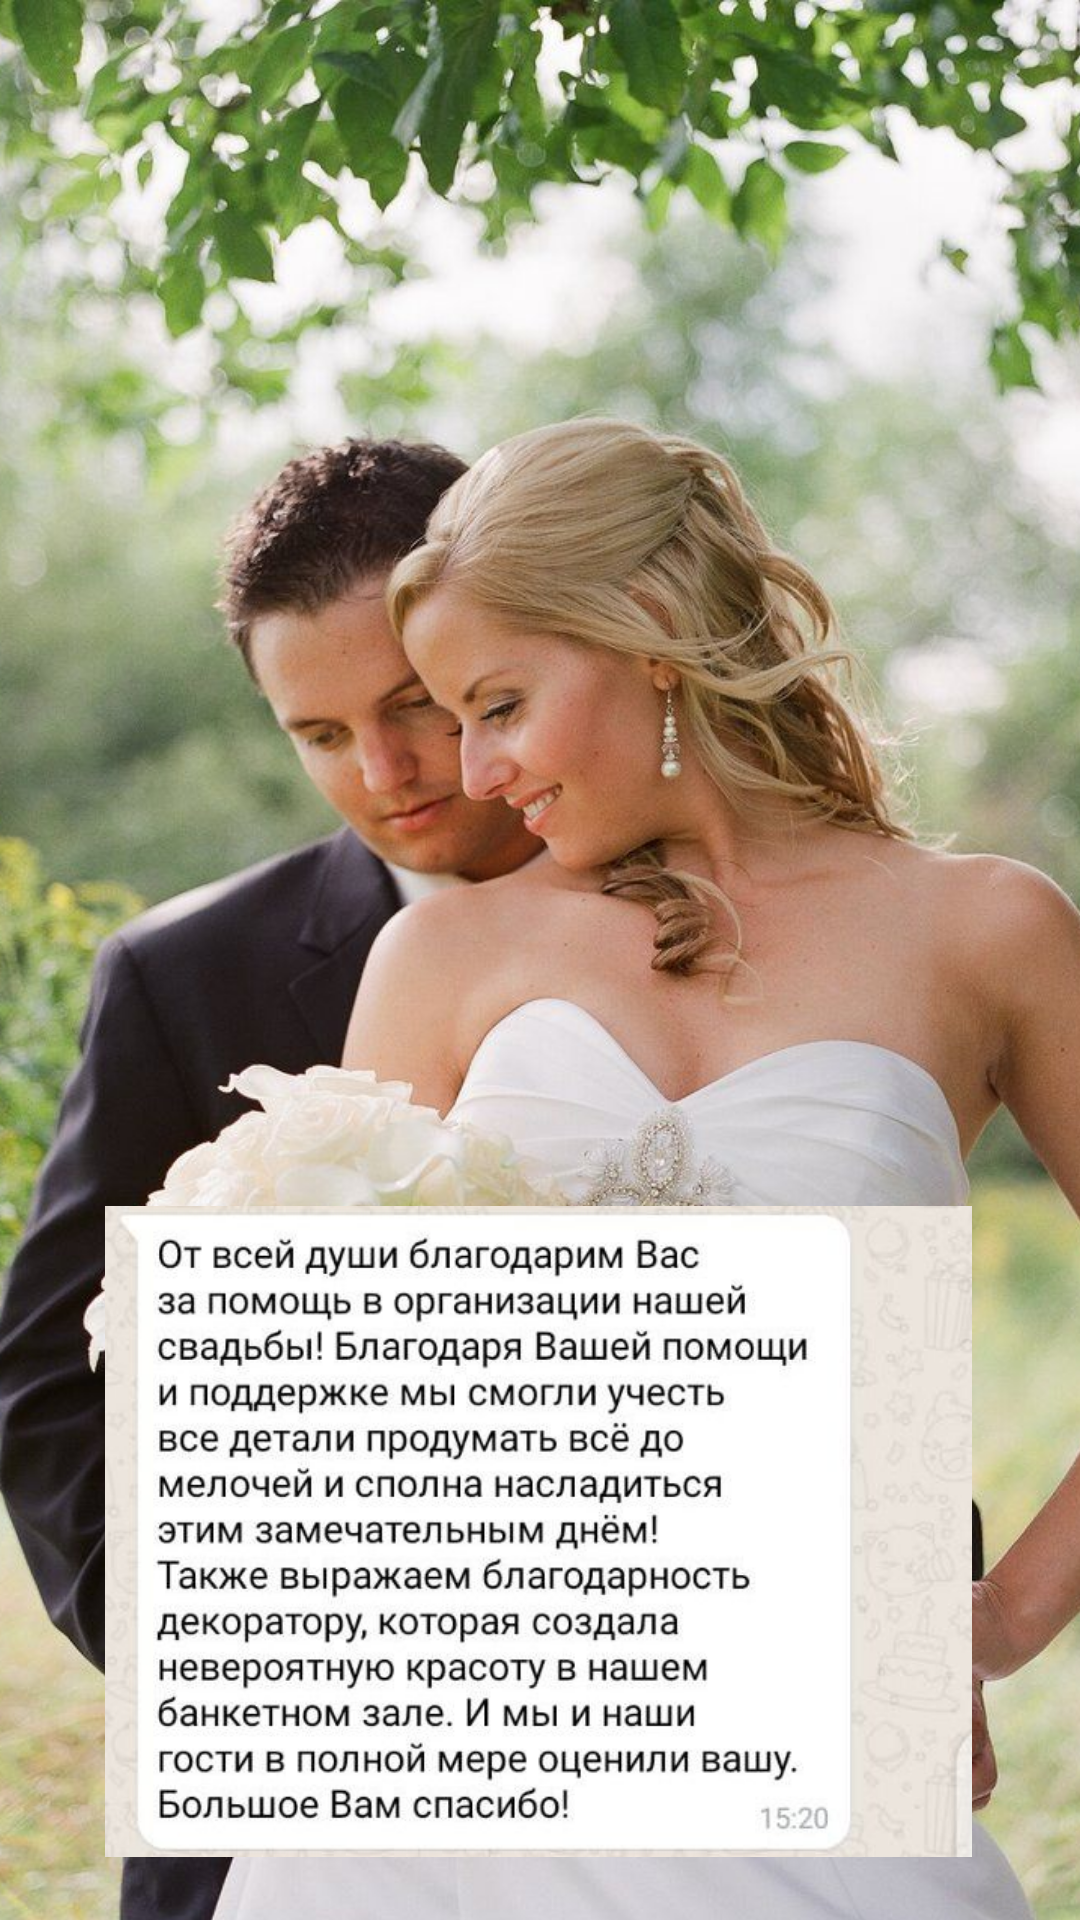 Организация свадьбы в Новороссийске
от компании Pandaevent